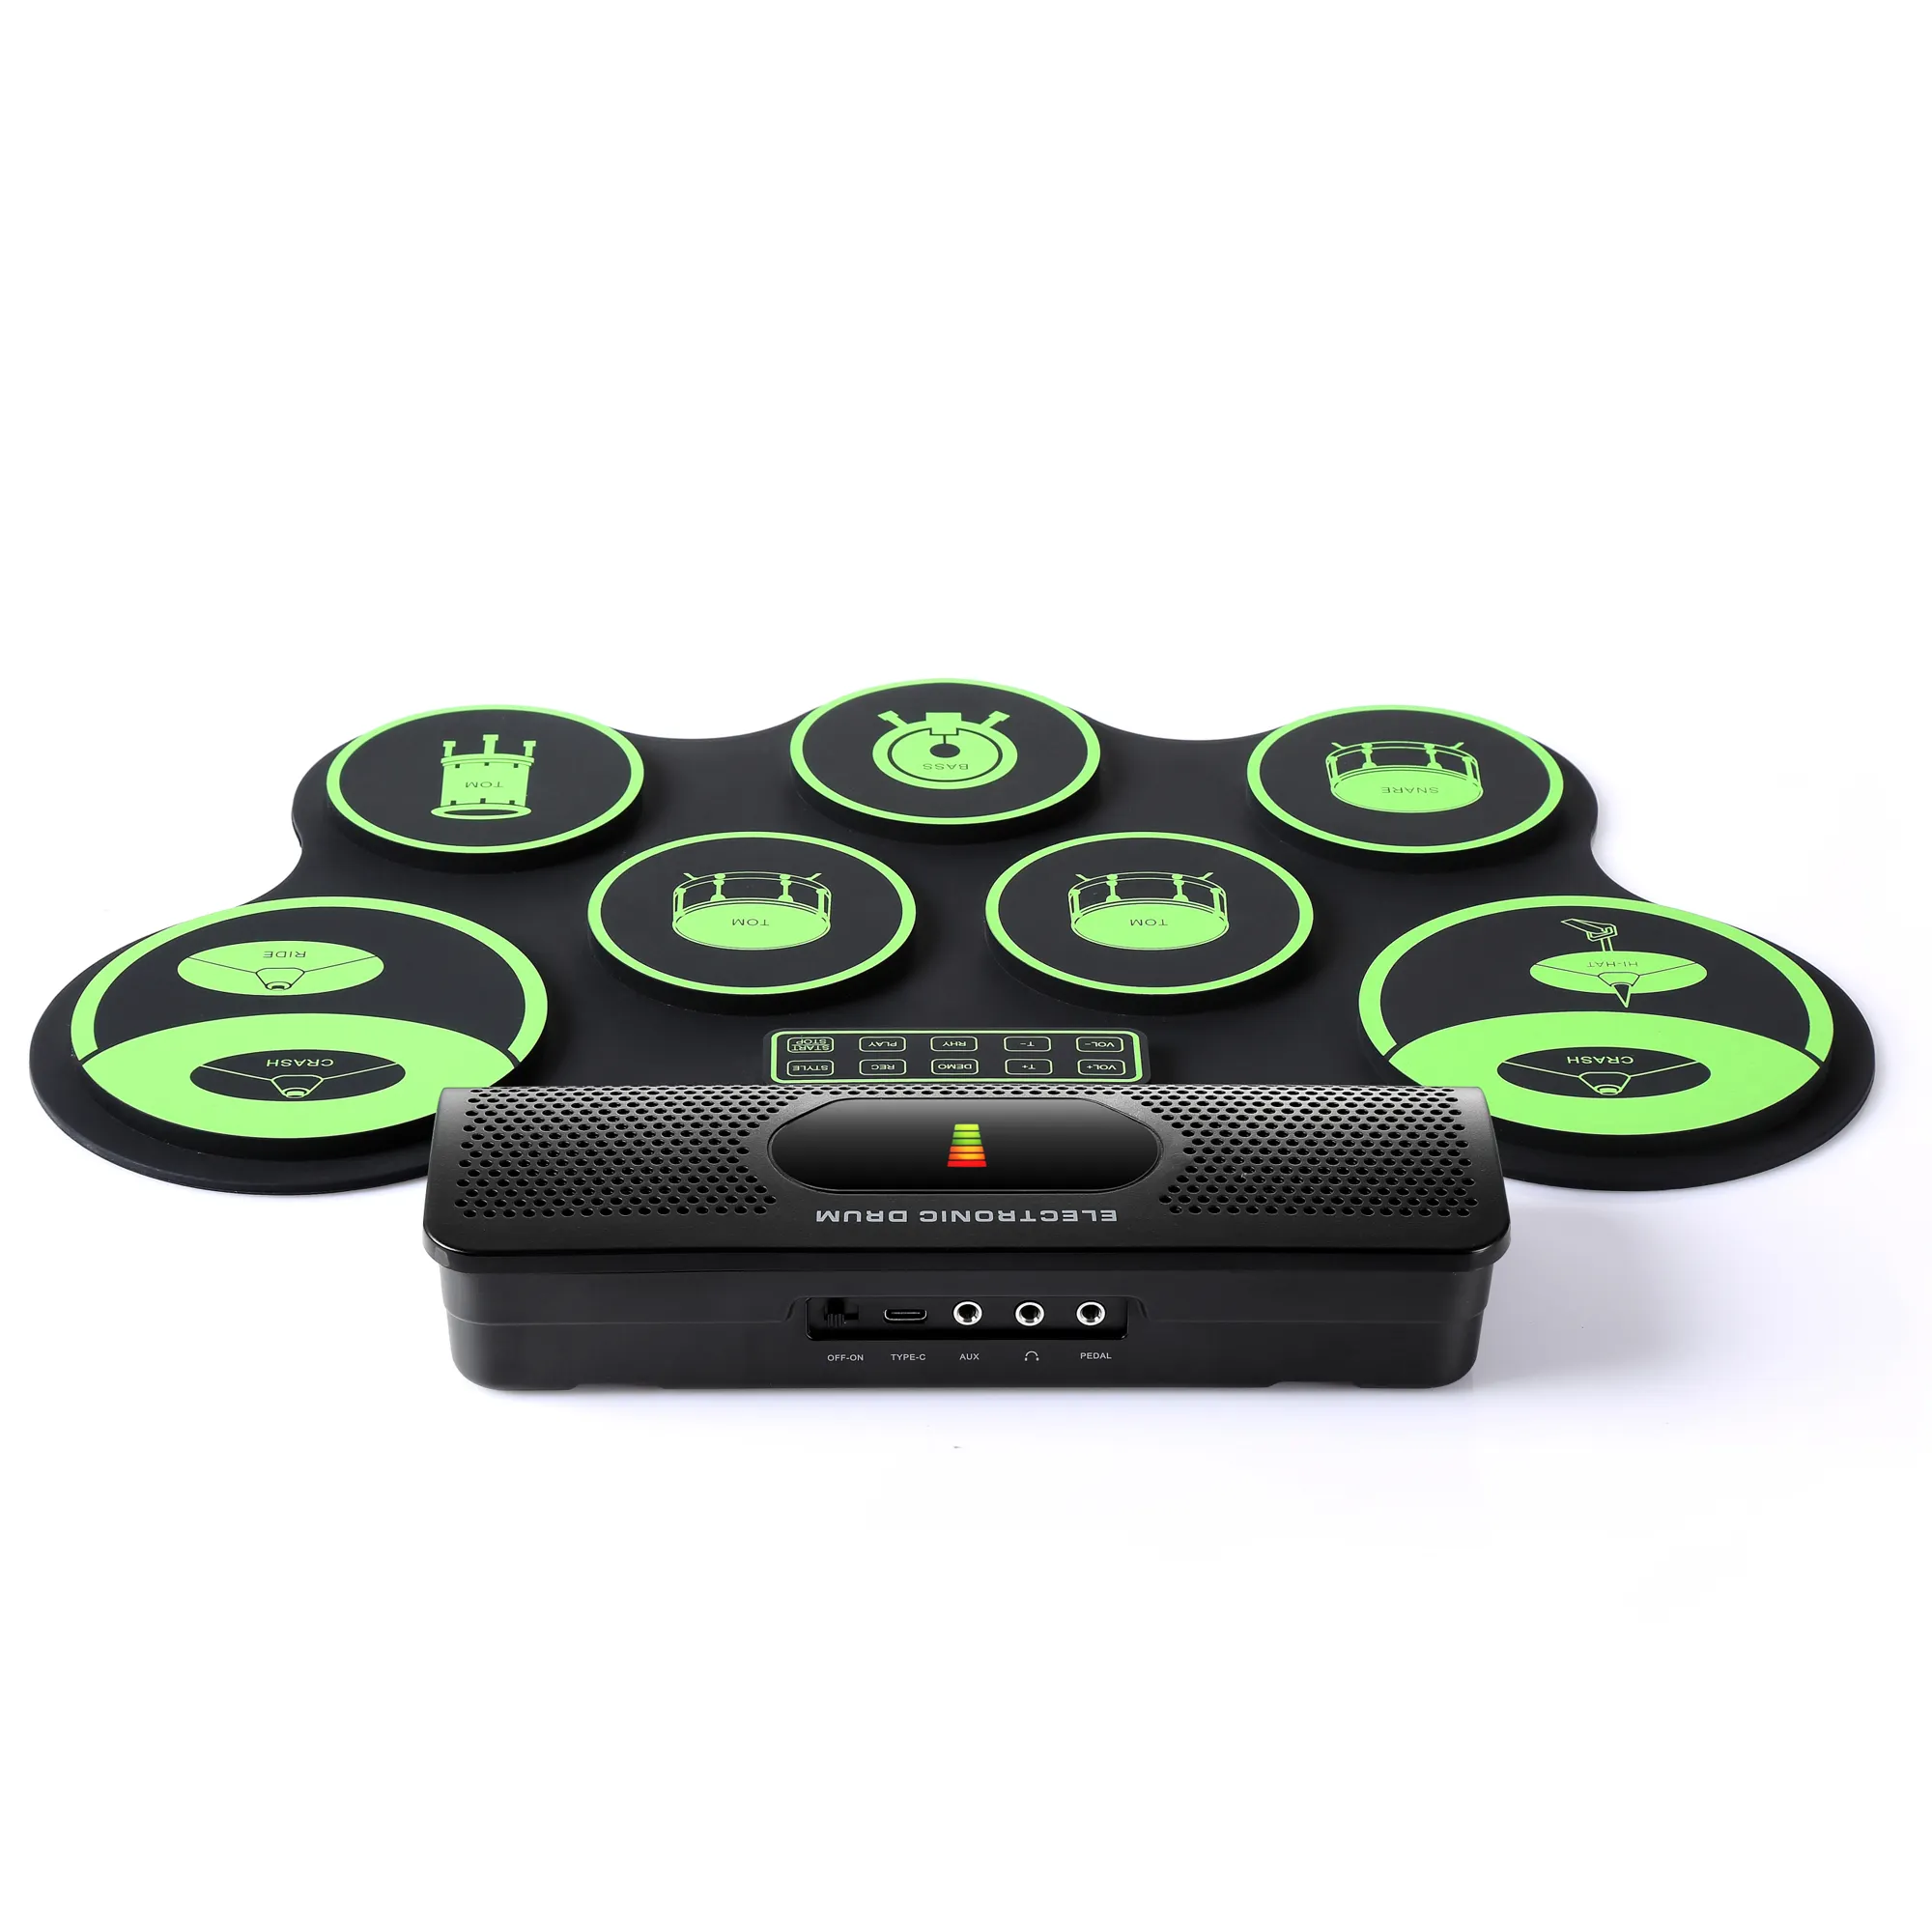 Tambor eléctrico portátil, juego de batería electrónica Mono Digital, 7 almohadillas de silicona, altavoz incorporado, alimentado por Usb con baquetas, pedales de pie